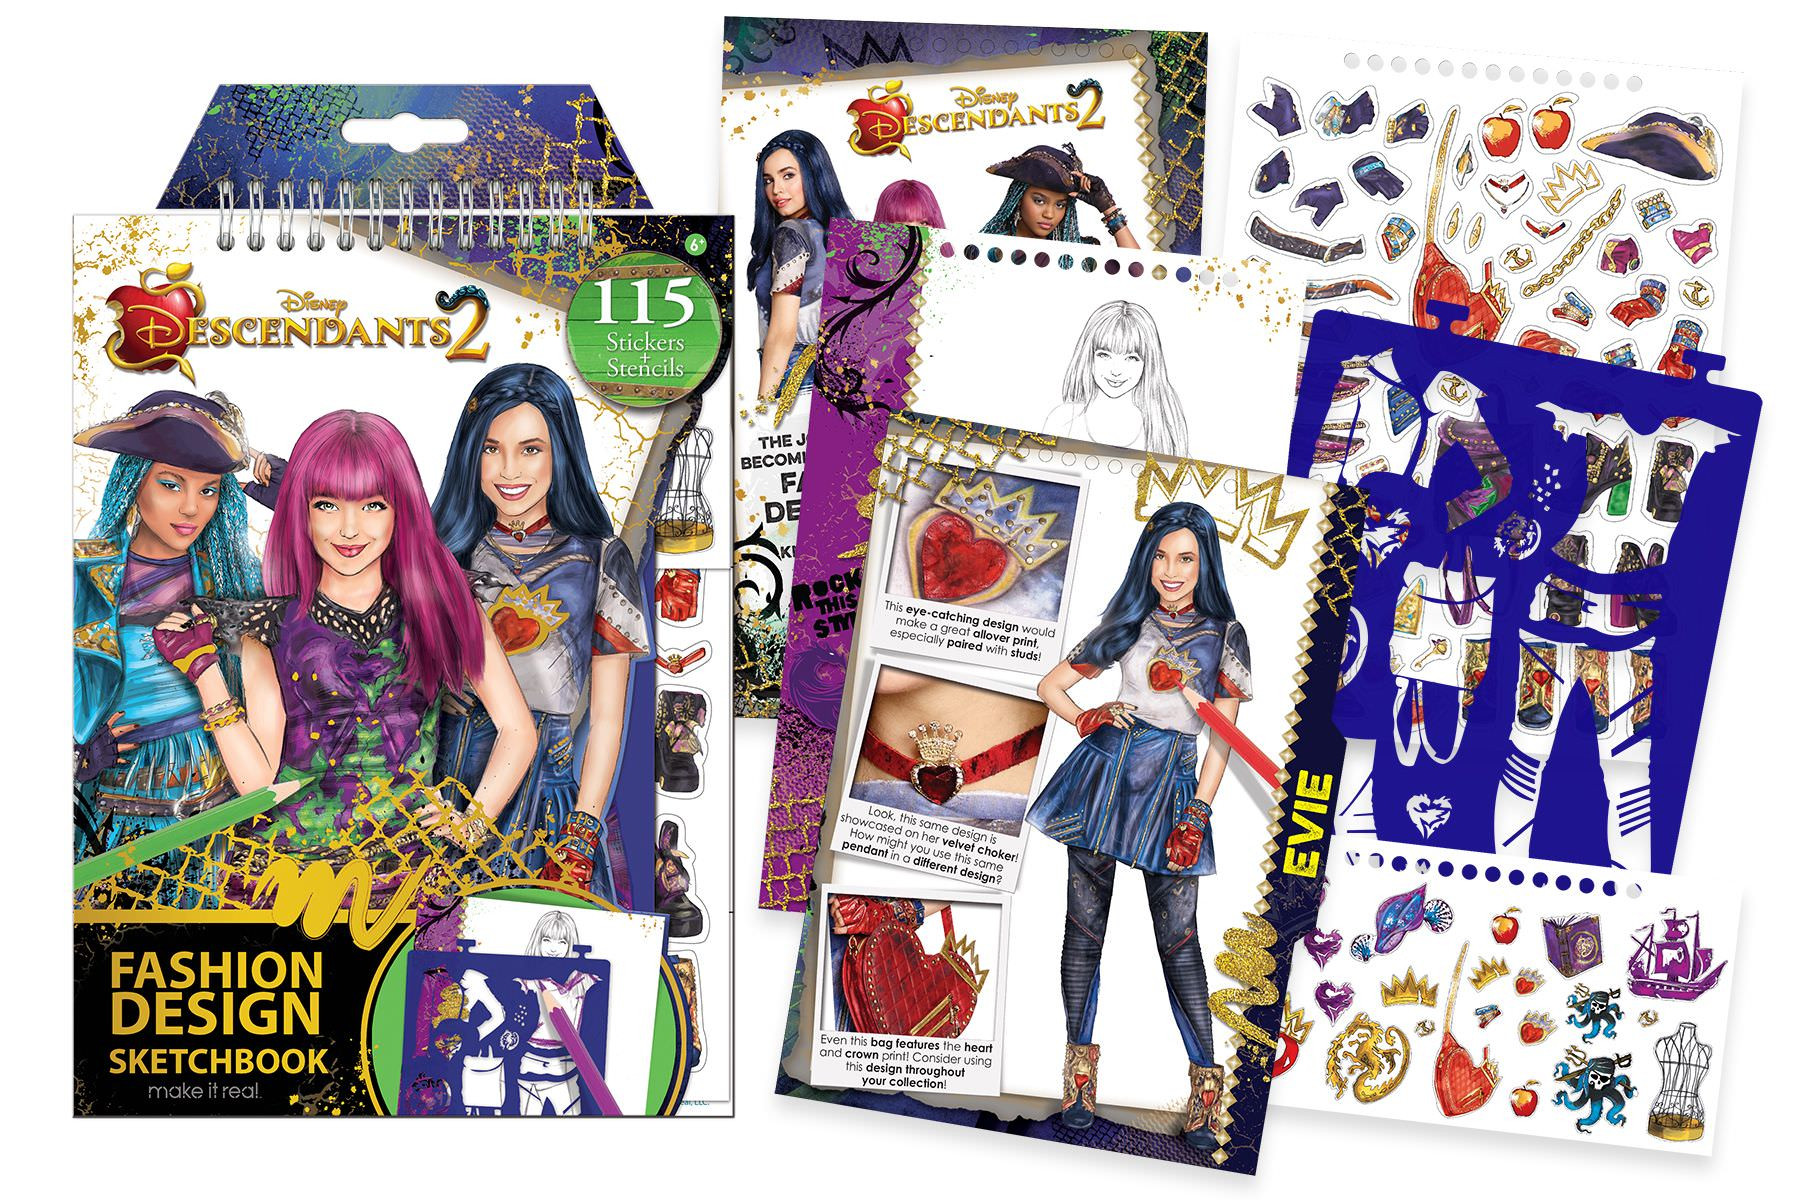 Fashion Design Kit For Kids
 Disney Descendants 2 Fashion Design Sketchbook Kids